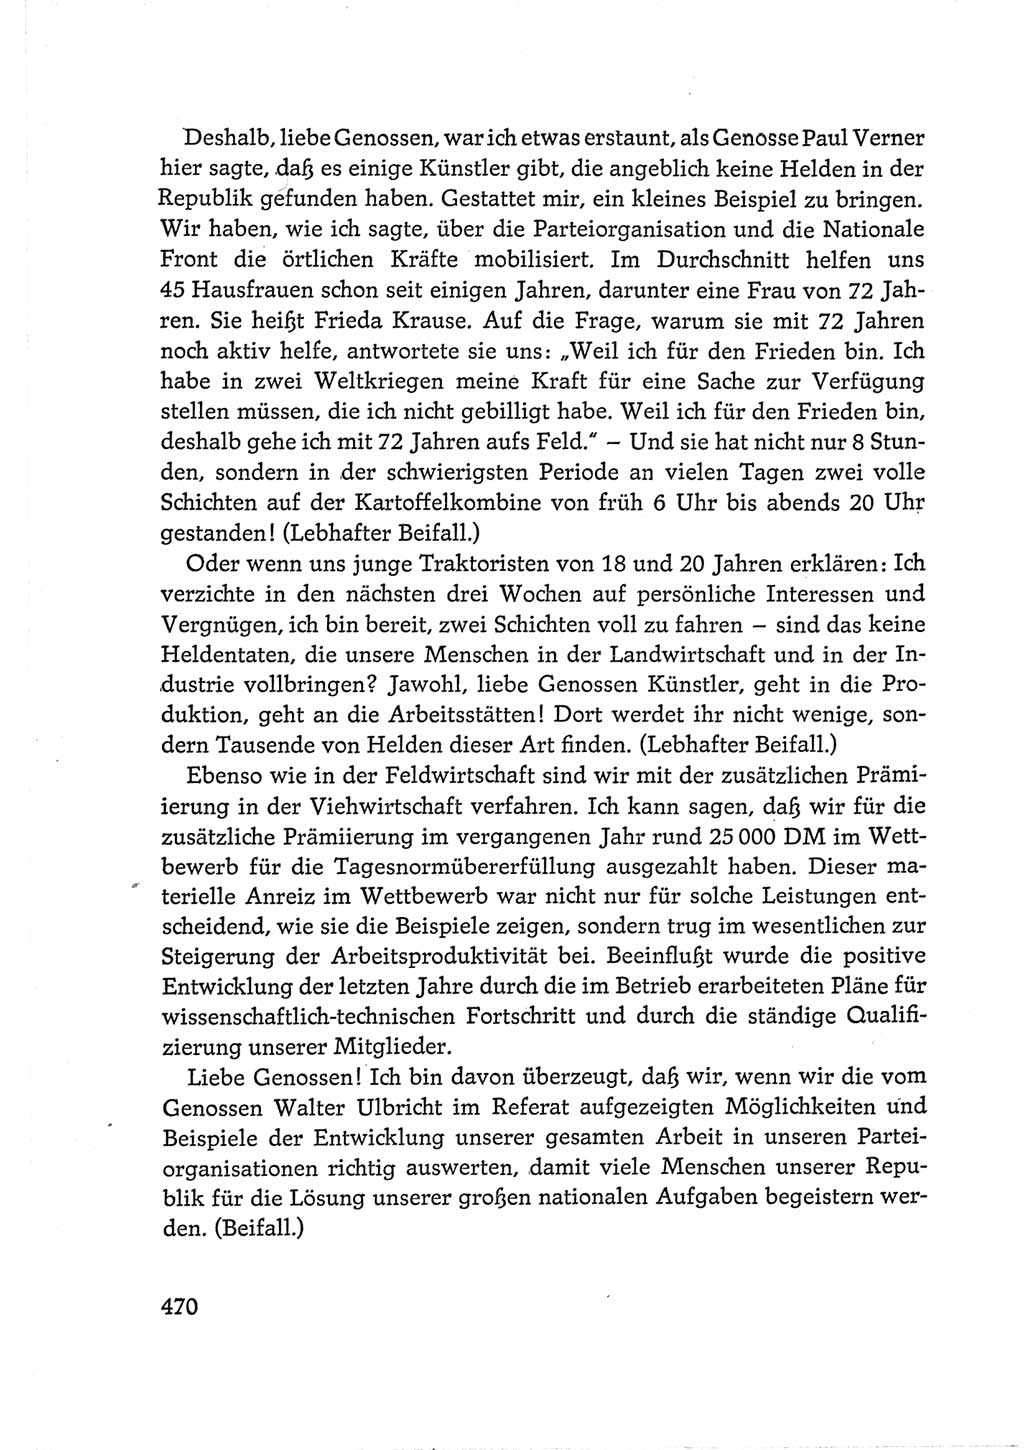 Protokoll der Verhandlungen des Ⅵ. Parteitages der Sozialistischen Einheitspartei Deutschlands (SED) [Deutsche Demokratische Republik (DDR)] 1963, Band Ⅰ, Seite 470 (Prot. Verh. Ⅵ. PT SED DDR 1963, Bd. Ⅰ, S. 470)